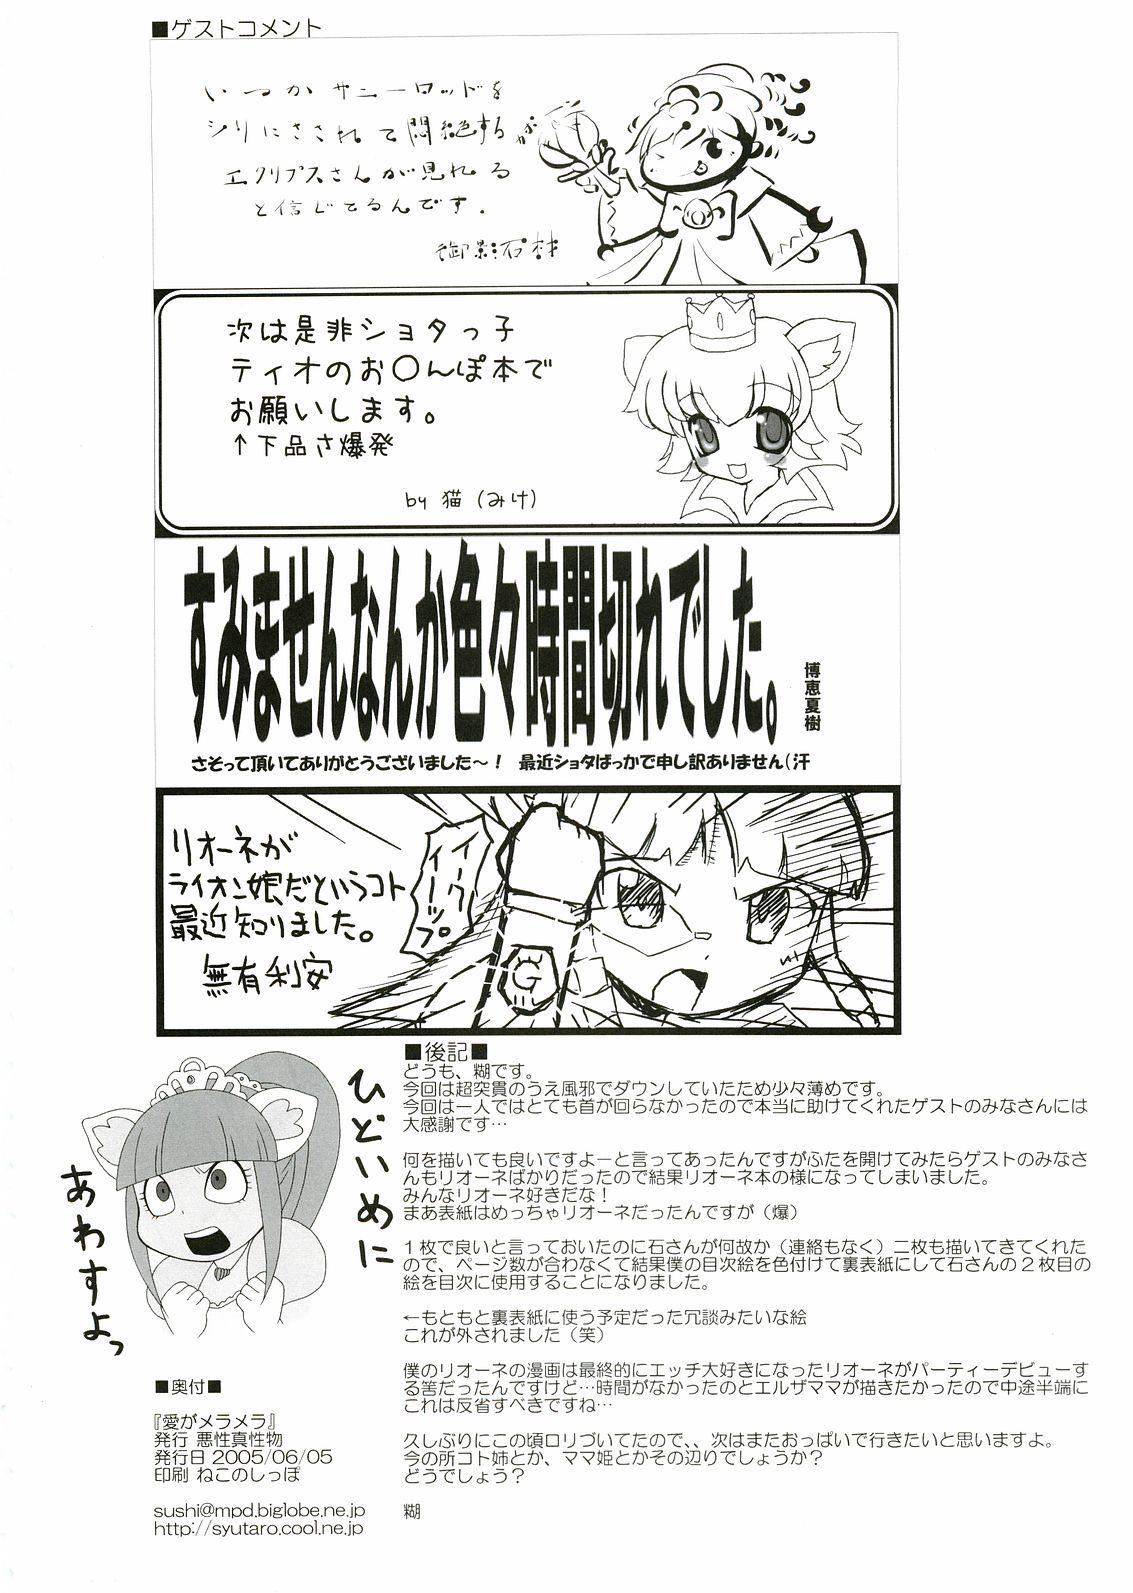 Pink Ai ga Meramera - Fushigiboshi no futagohime Mask - Page 17